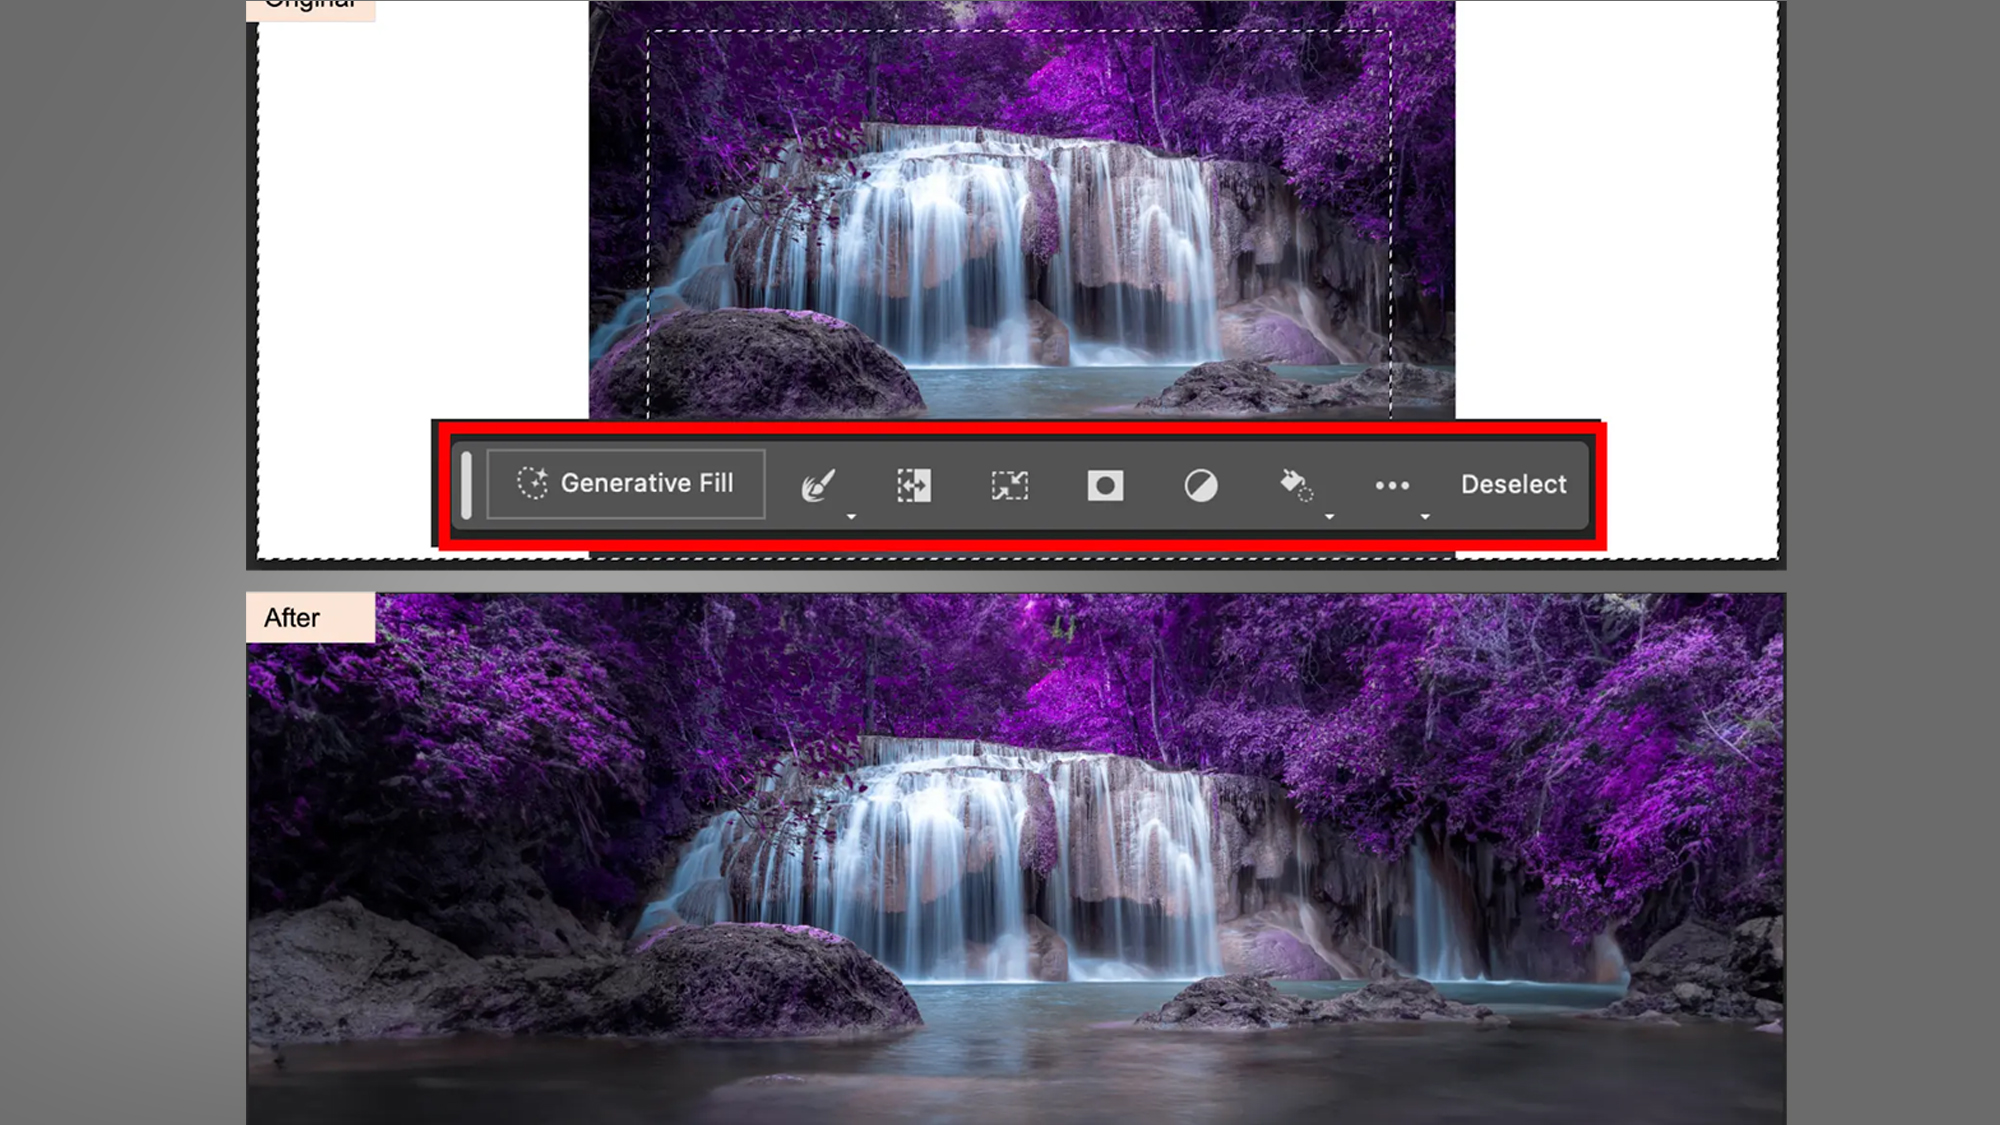 تصویر یک آبشار در حال گسترش با استفاده از ابزار Generative Fill Adobe